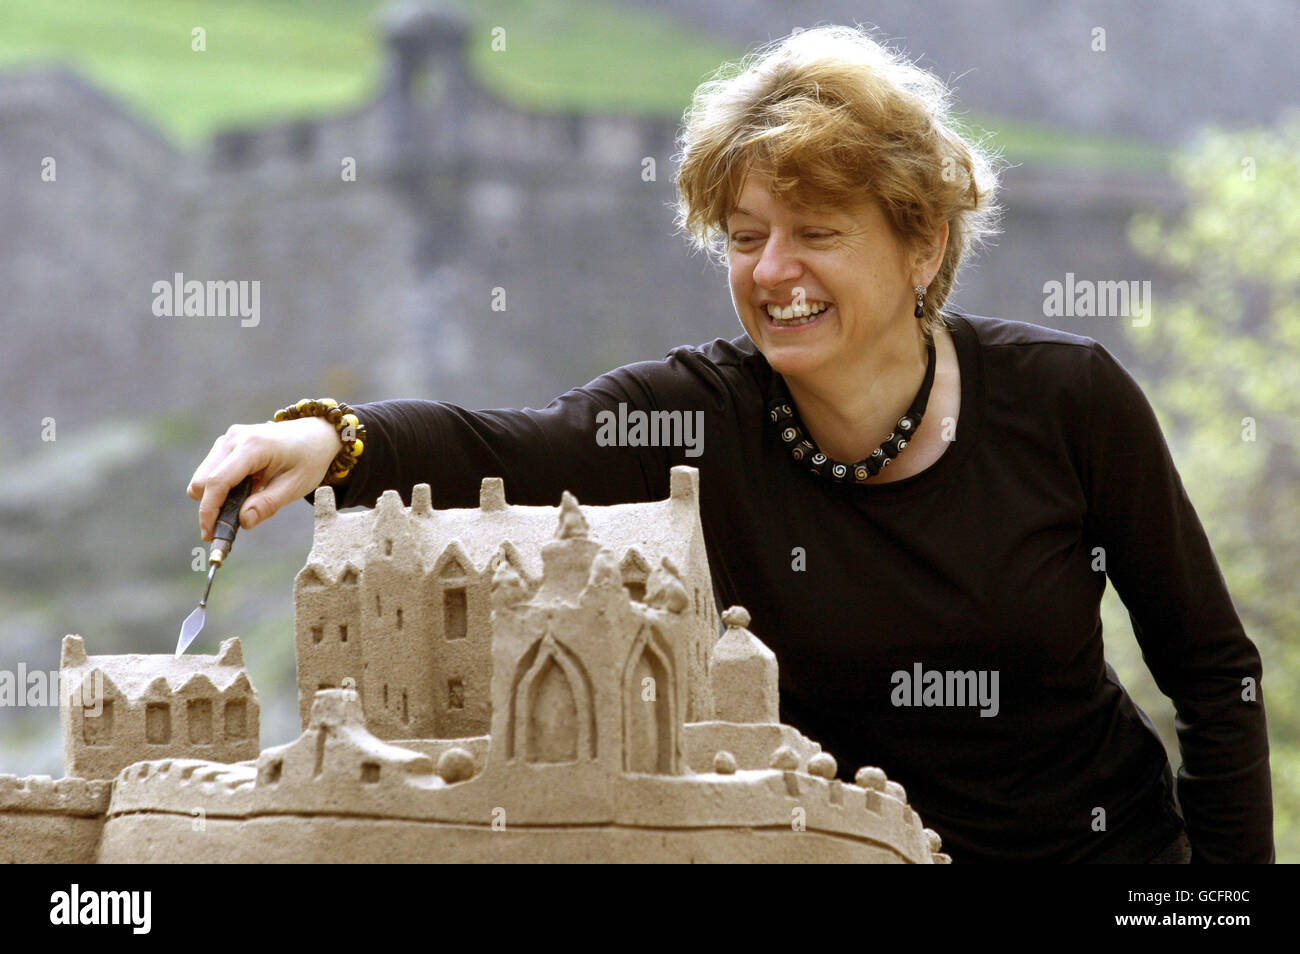 Artiste Kate Robinson avec sa sculpture sur sable sur Castle Street à Édimbourg, elle contient 100 billets d'avion et représente la cathédrale de Gaudi et le château d'Édimbourg - des monuments célèbres d'Édimbourg et de Barcelone. Banque D'Images